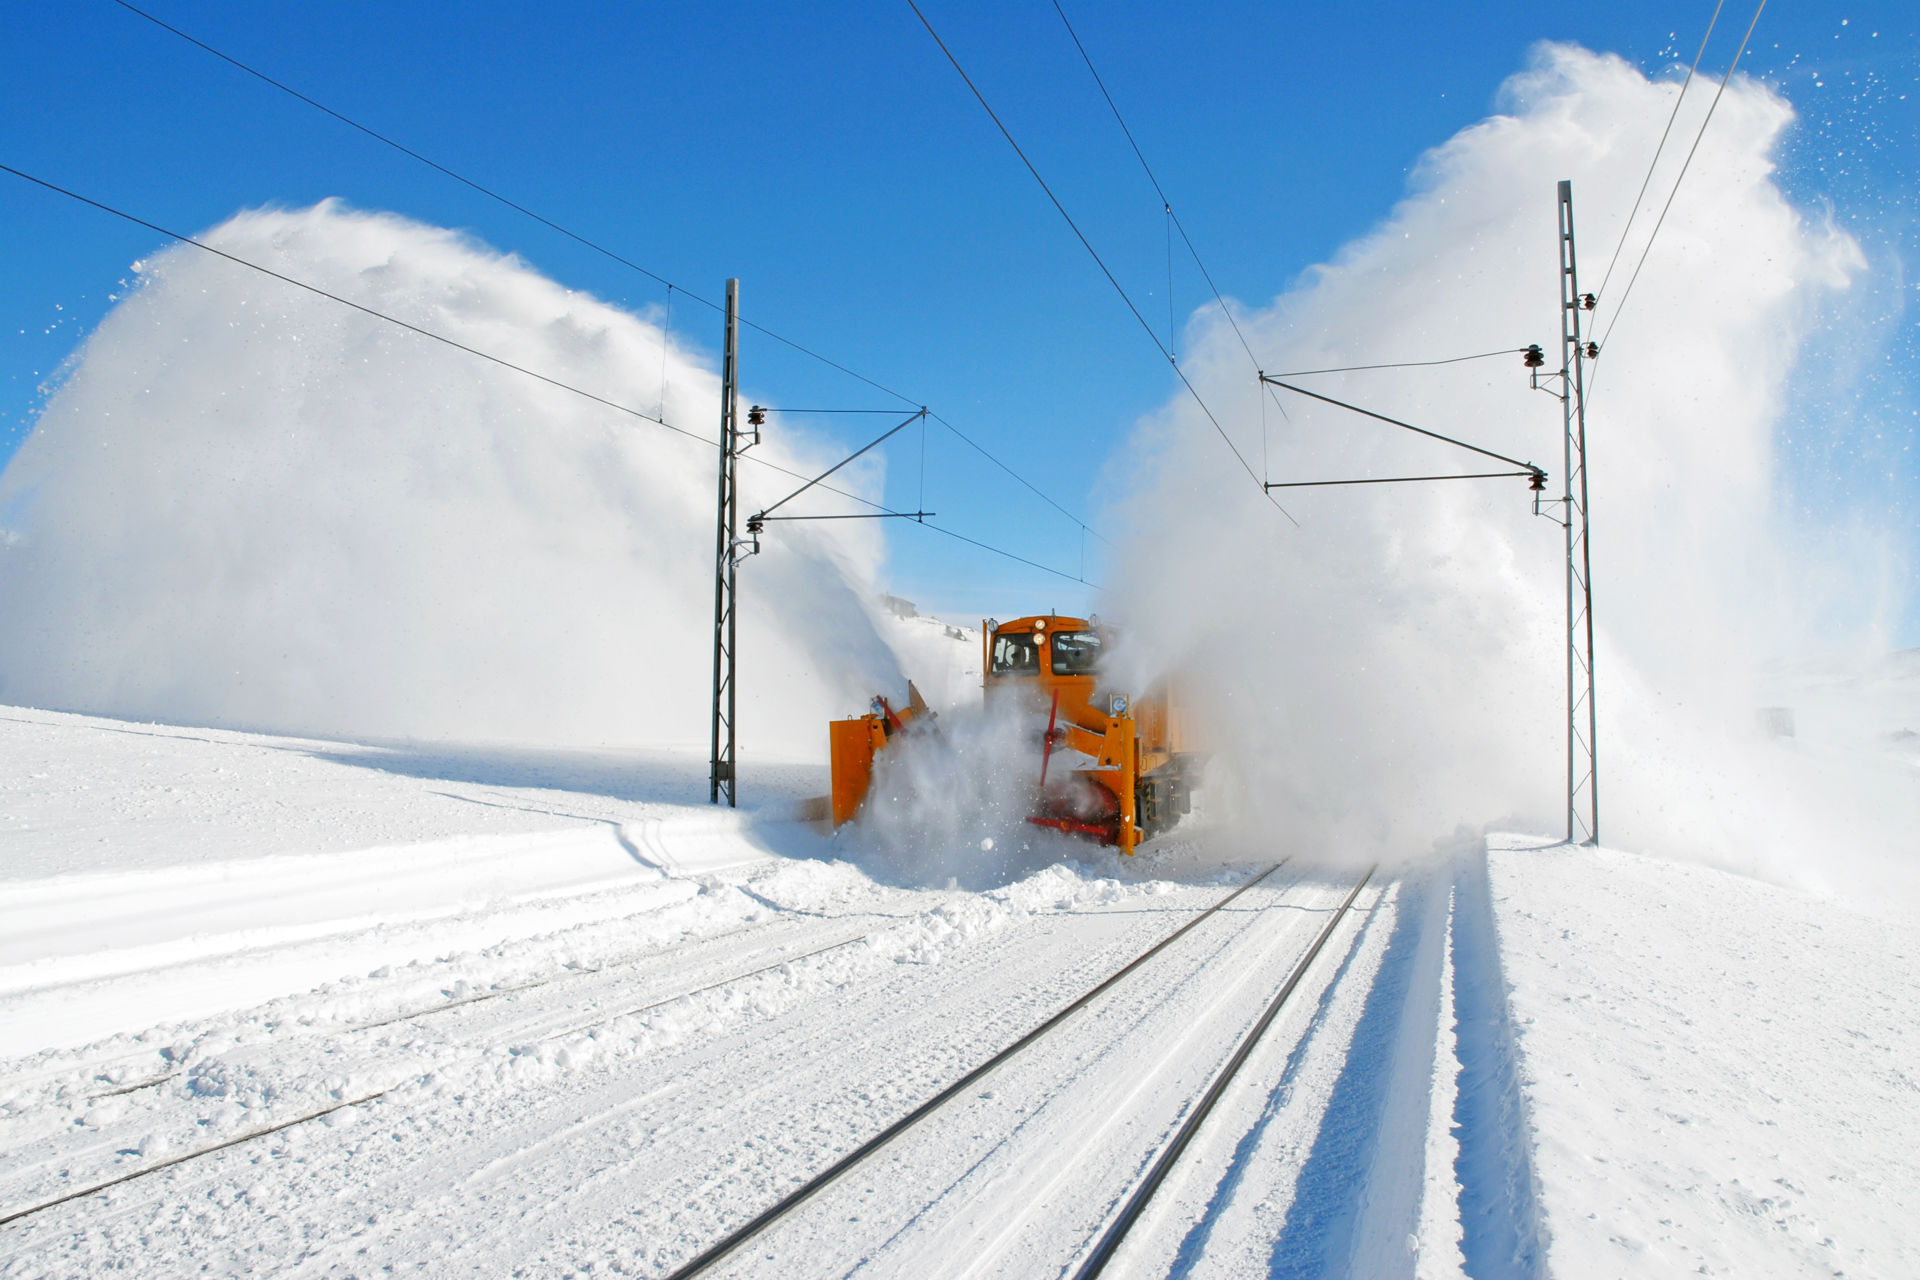 Eit arbeidstog på Finse mokar store snømenger frå toglinja, og snøsprøyten står